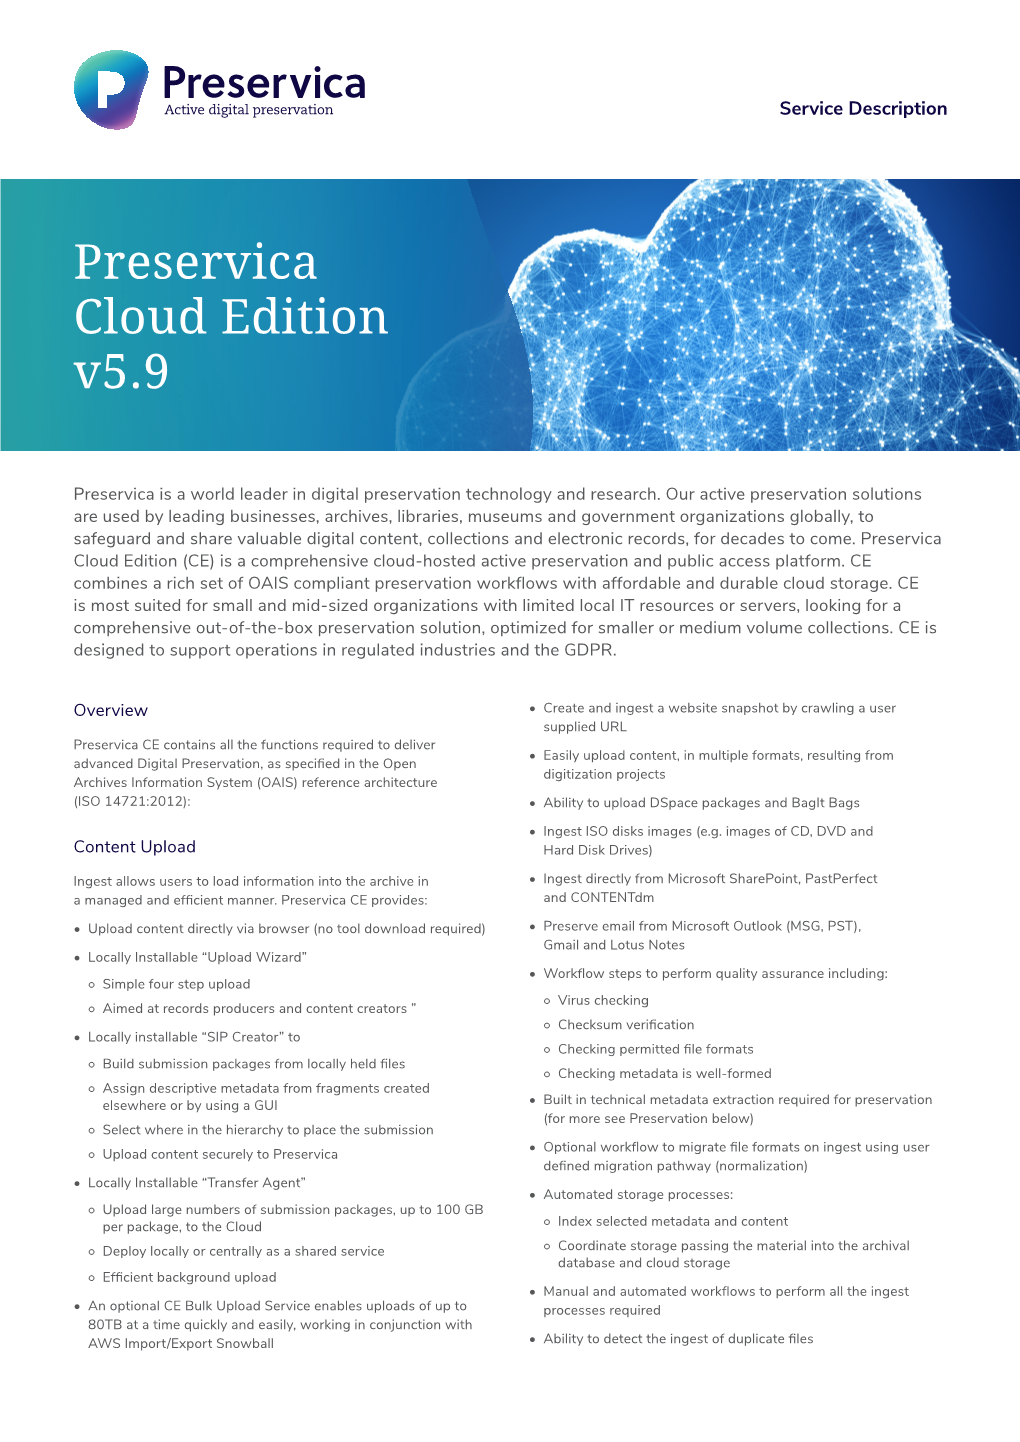 Preservica Cloud Edition V5.9